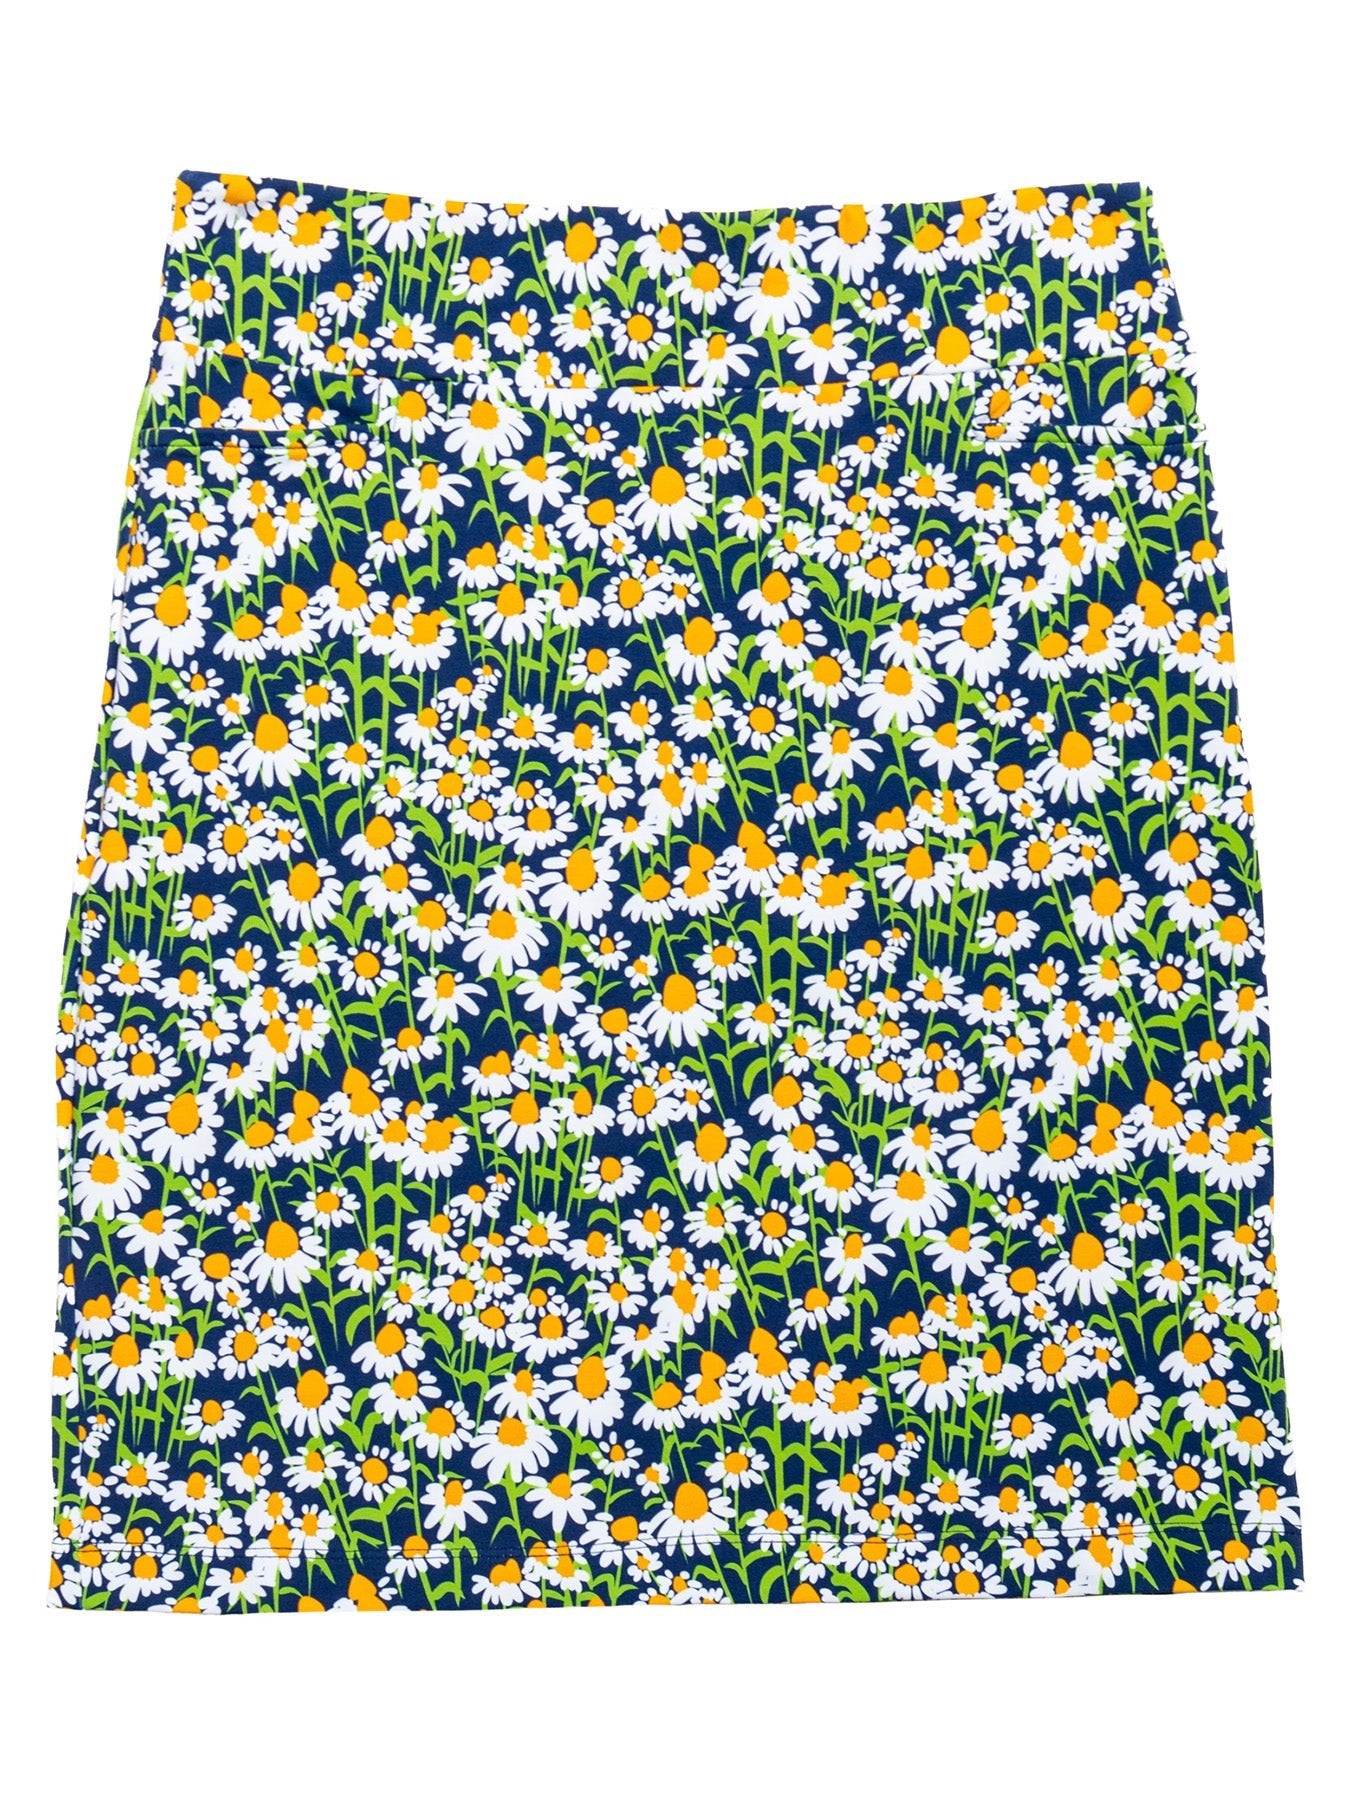 FREYA skirt Echinacea Navy - Lesley Evers-Bottoms-floral-freya